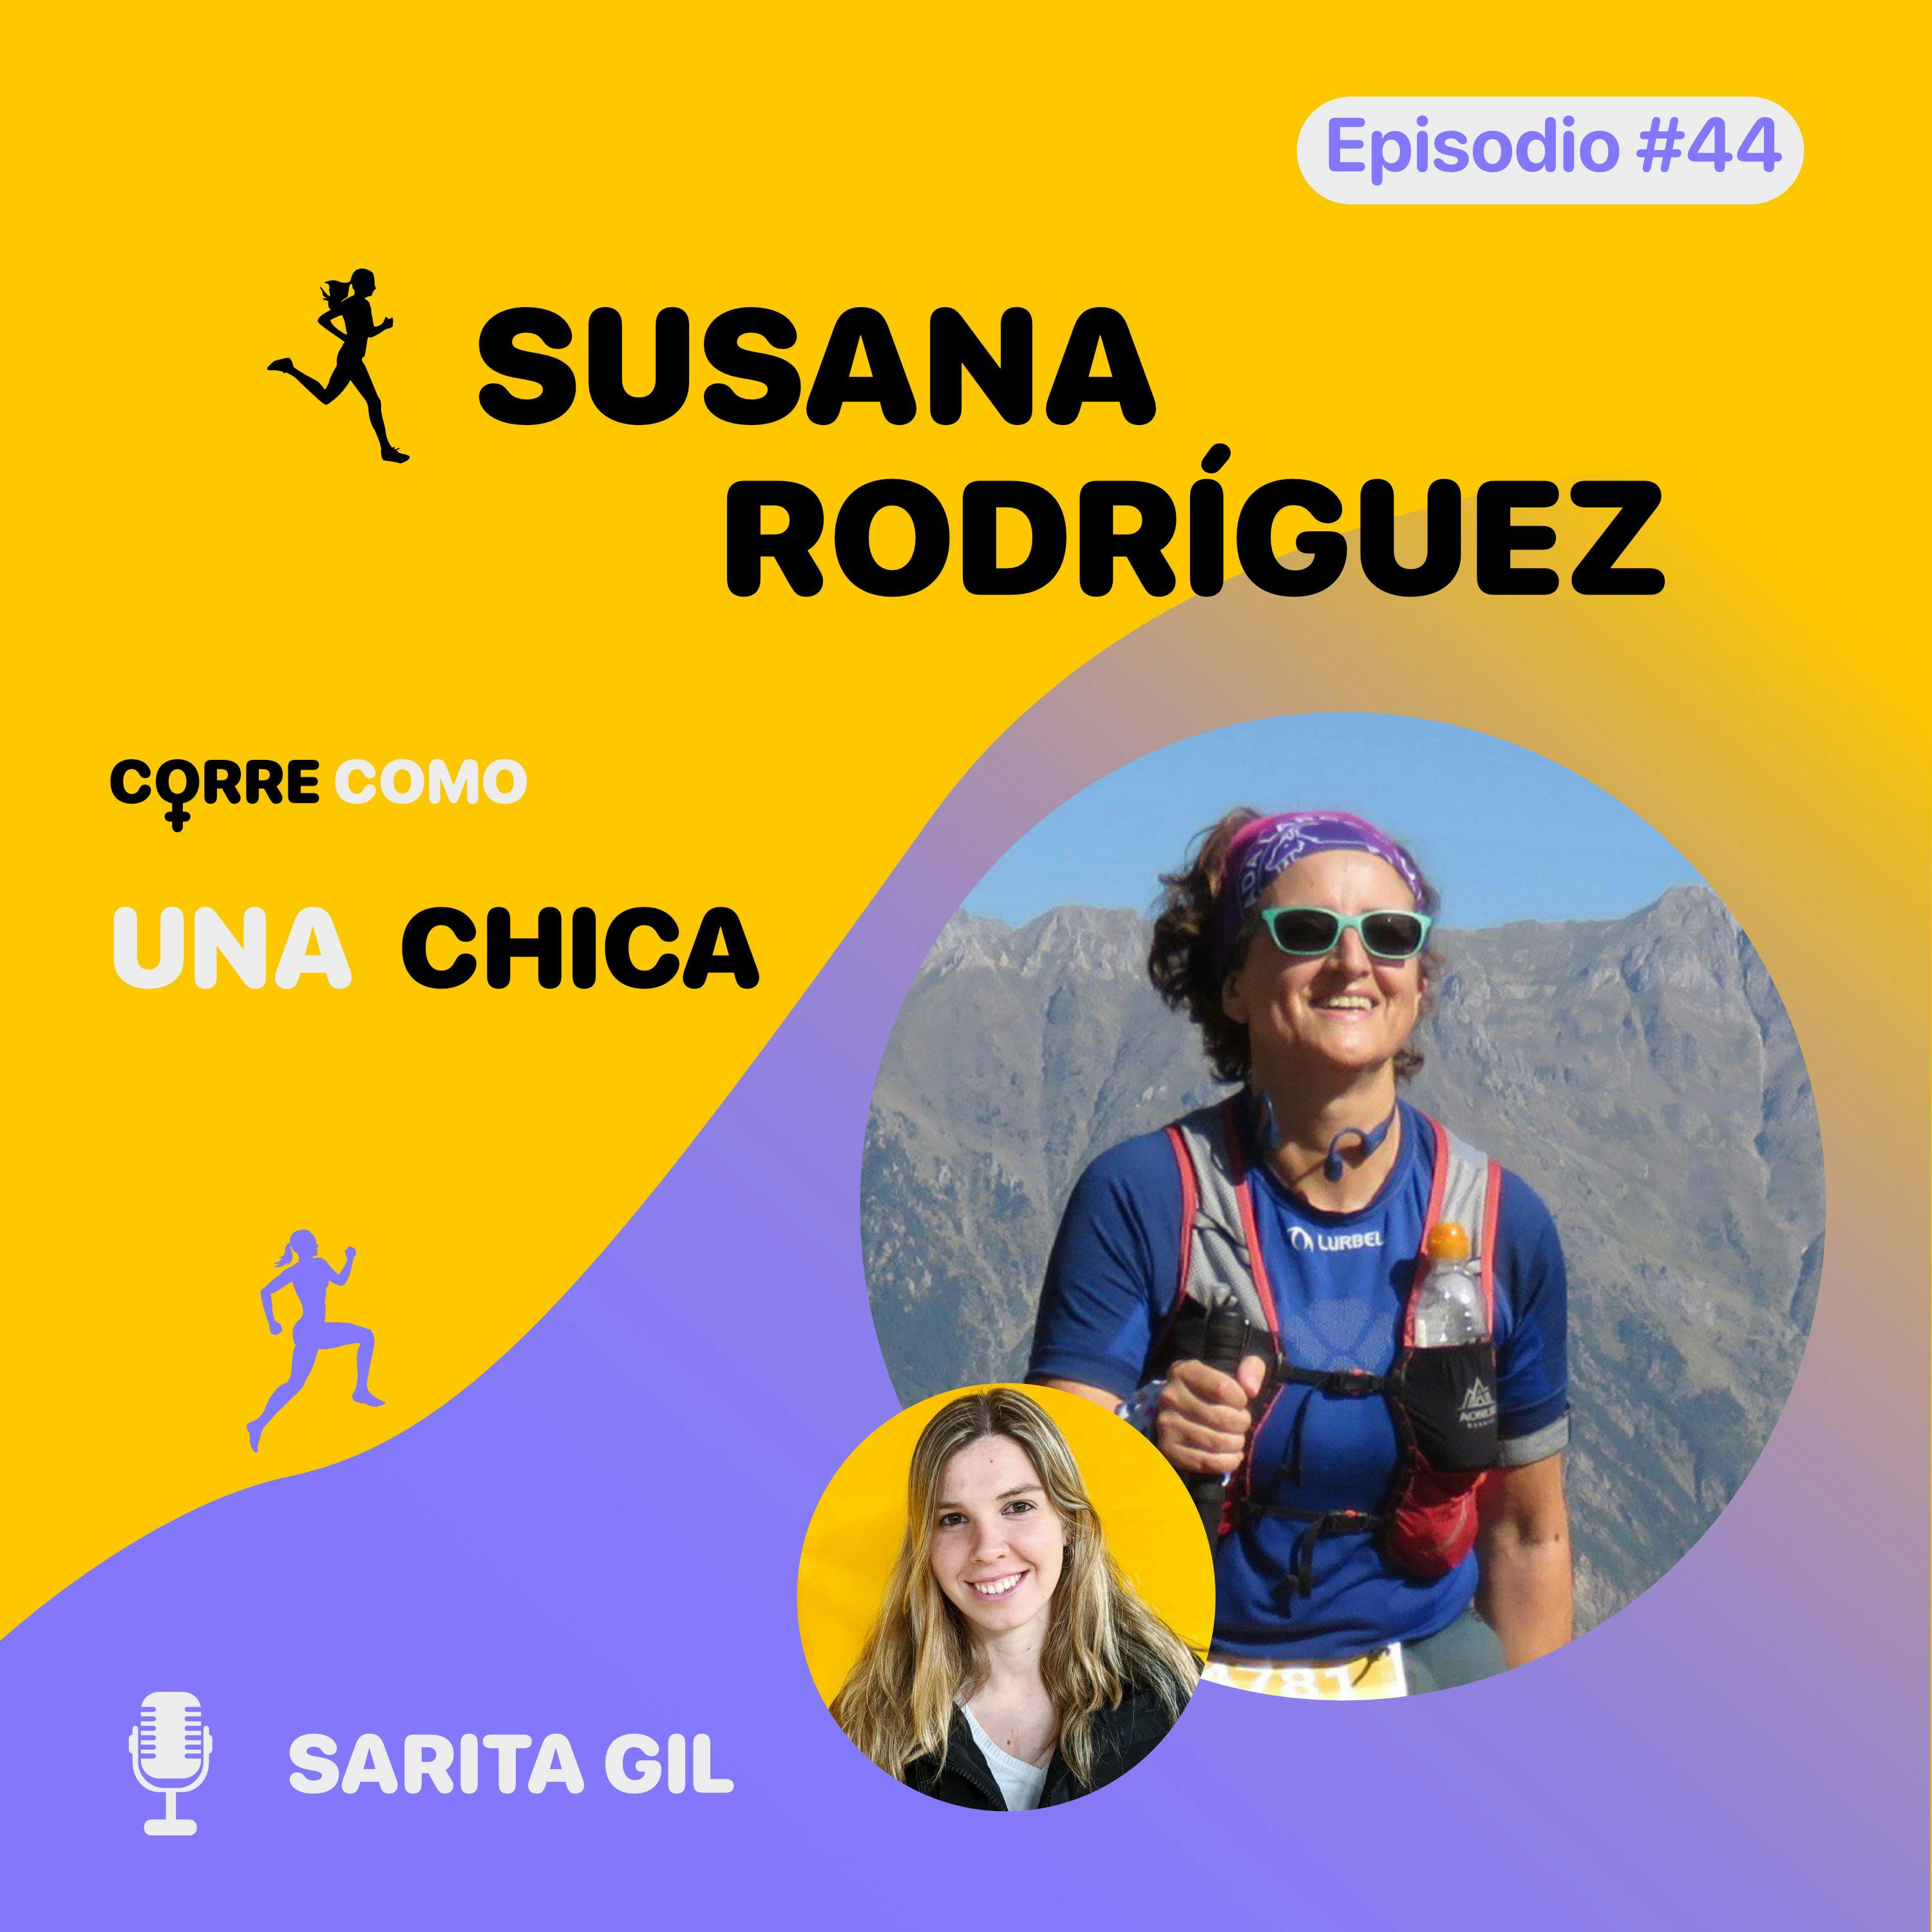 imagen de portada de: Episodio #44 - Susana Rodríguez: “CientíFITca” 